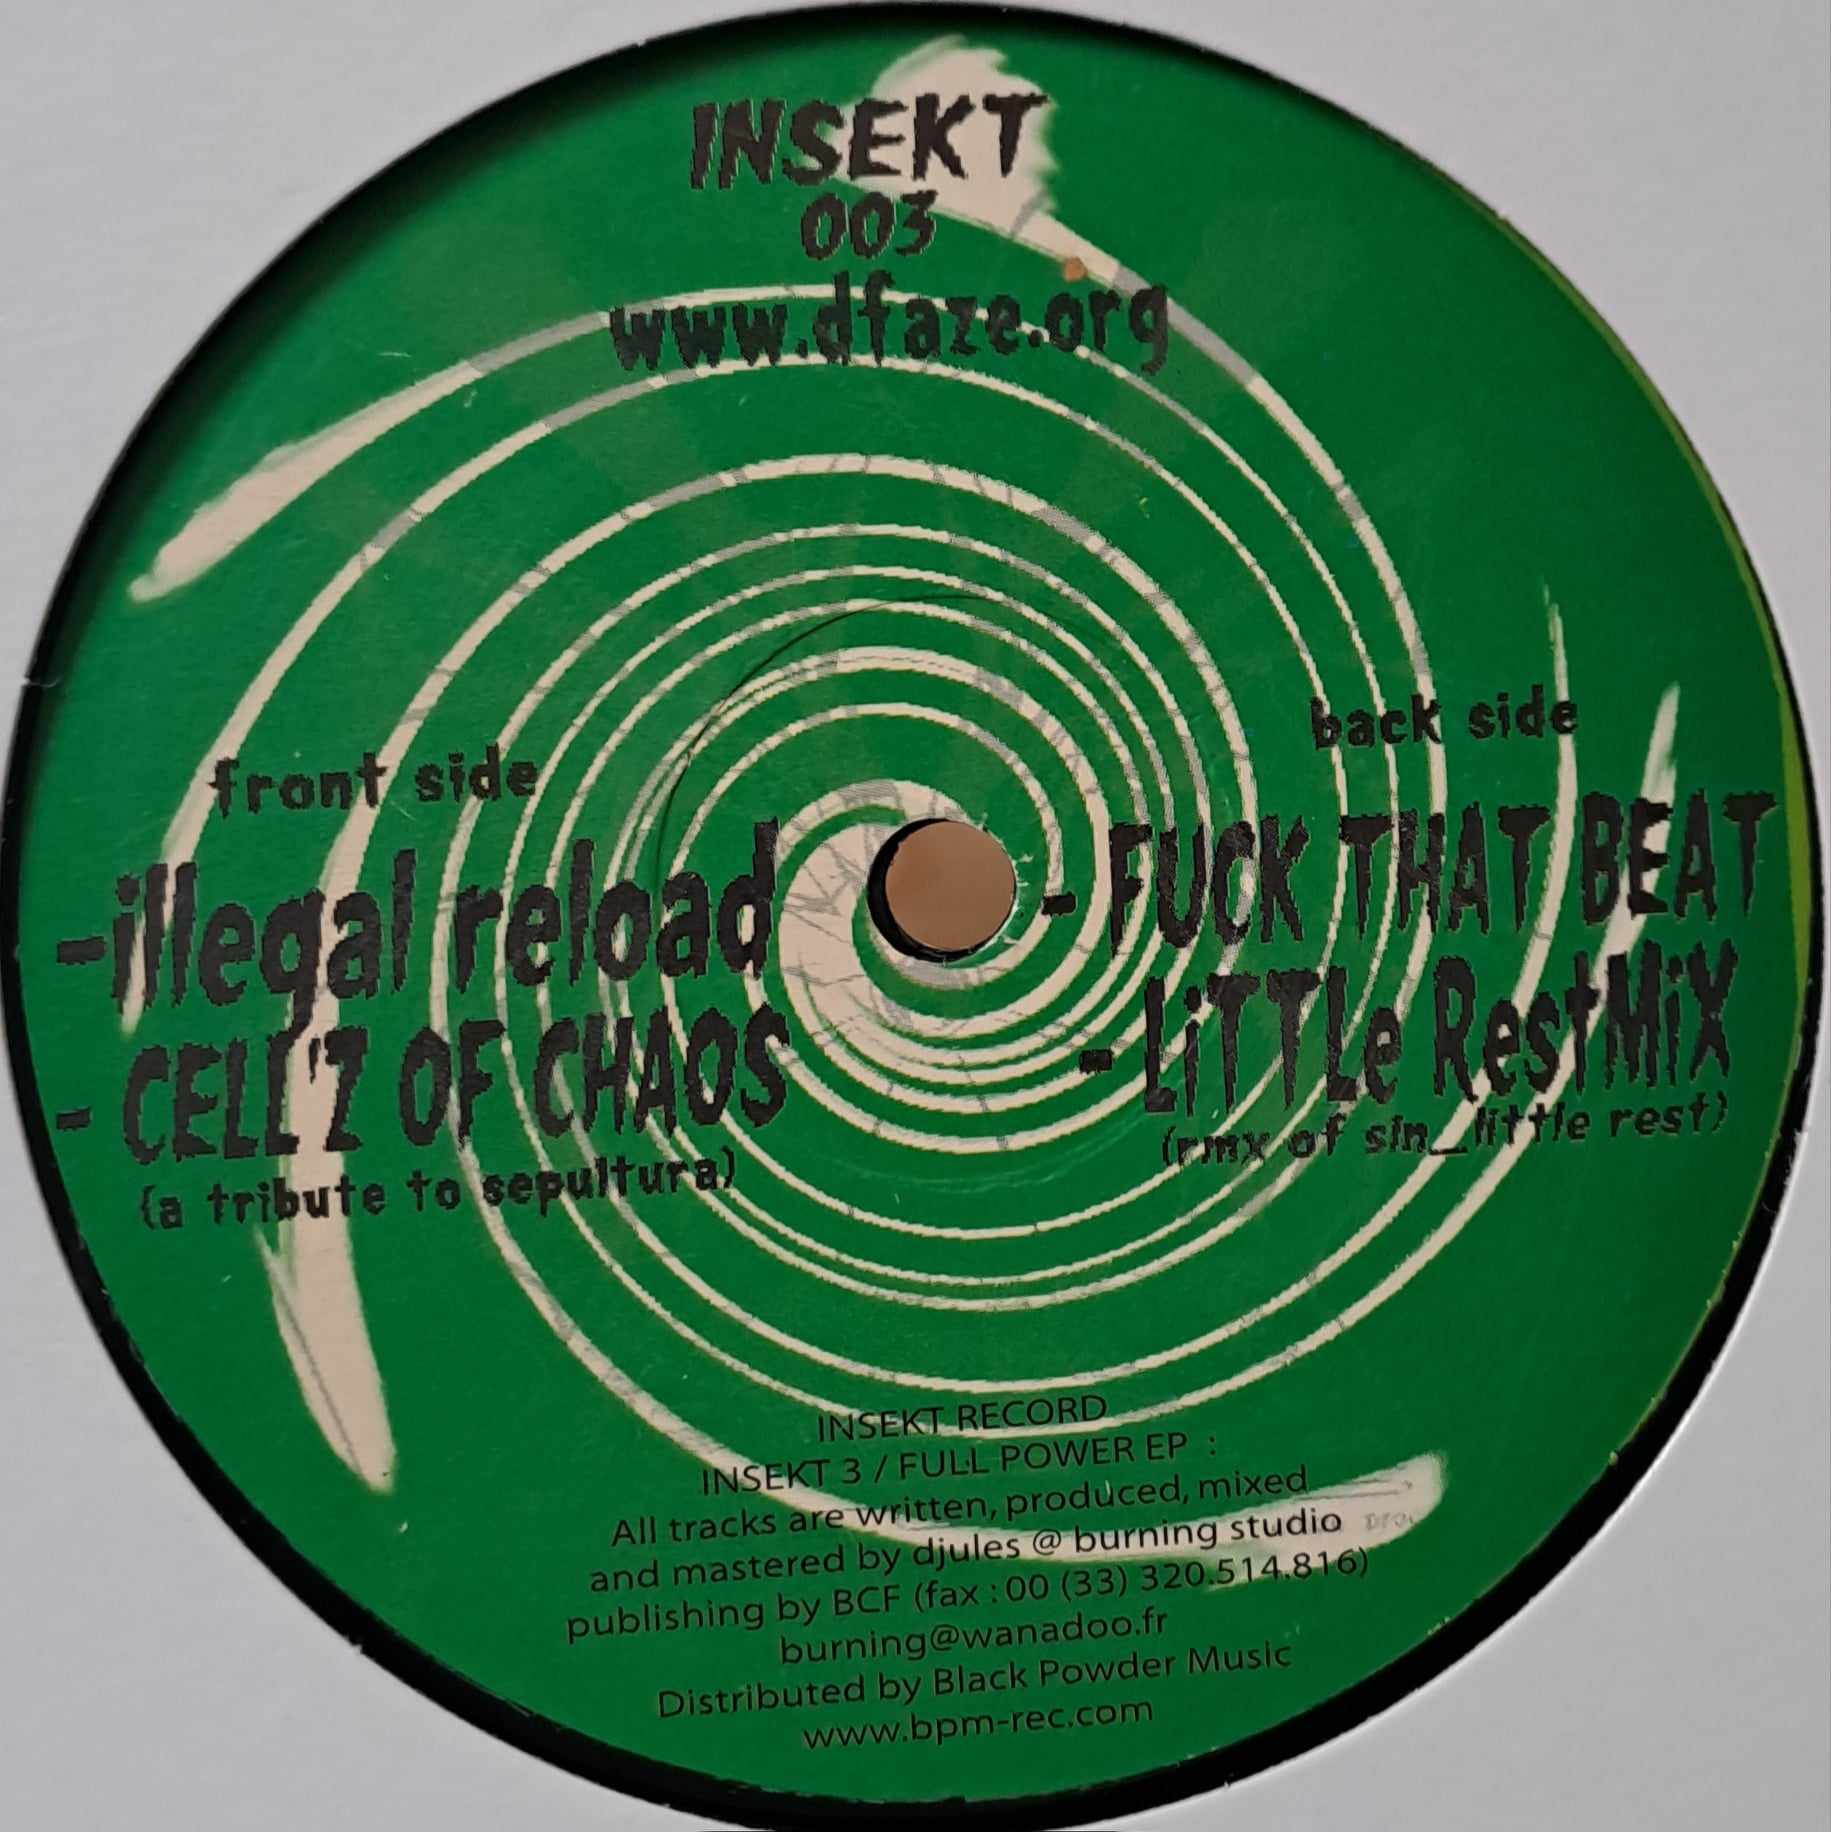 Insekt Records 03 - vinyle hardcore